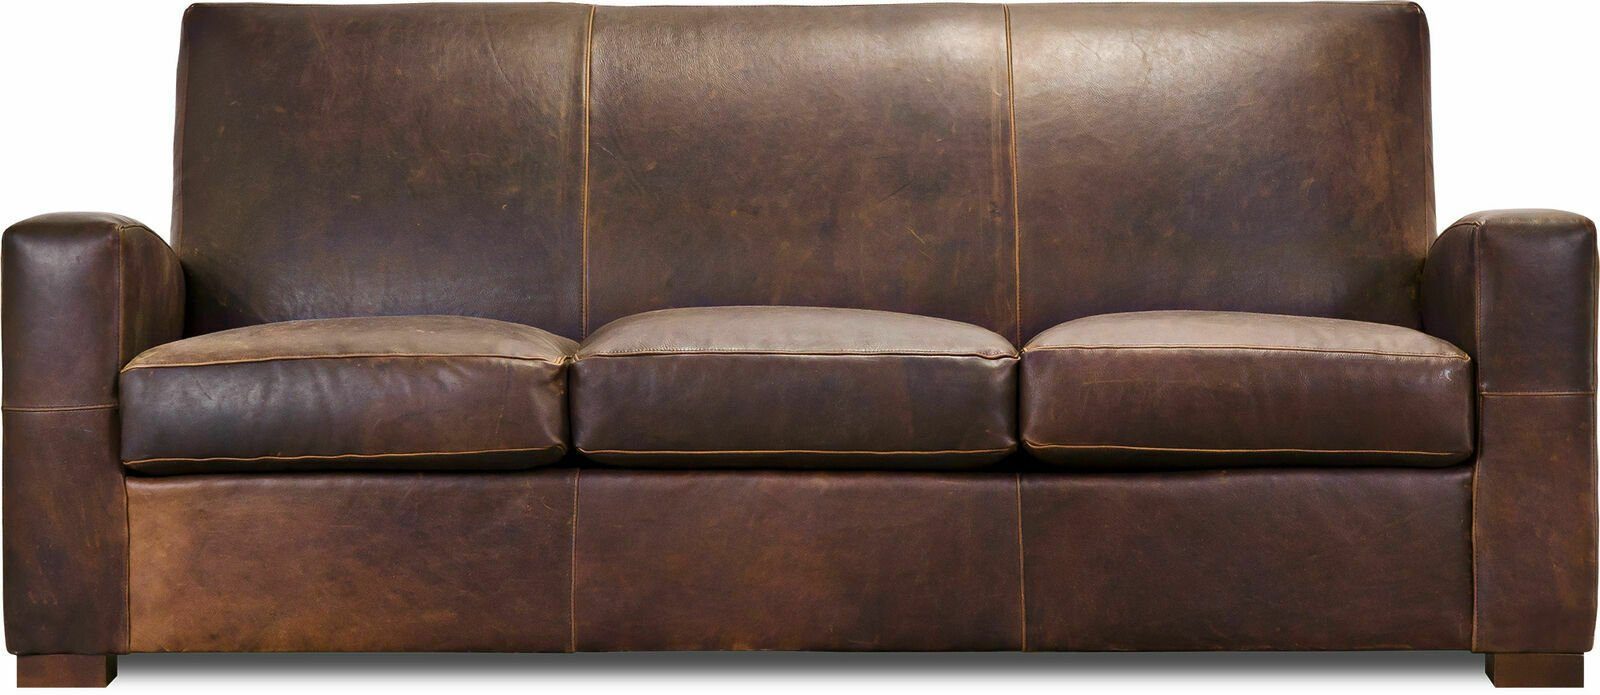 JVmoebel 3-Sitzer XXL Sofa 3 Sitzer braun Couch Chesterfield Garnitur Kunstleder, Made in Europe